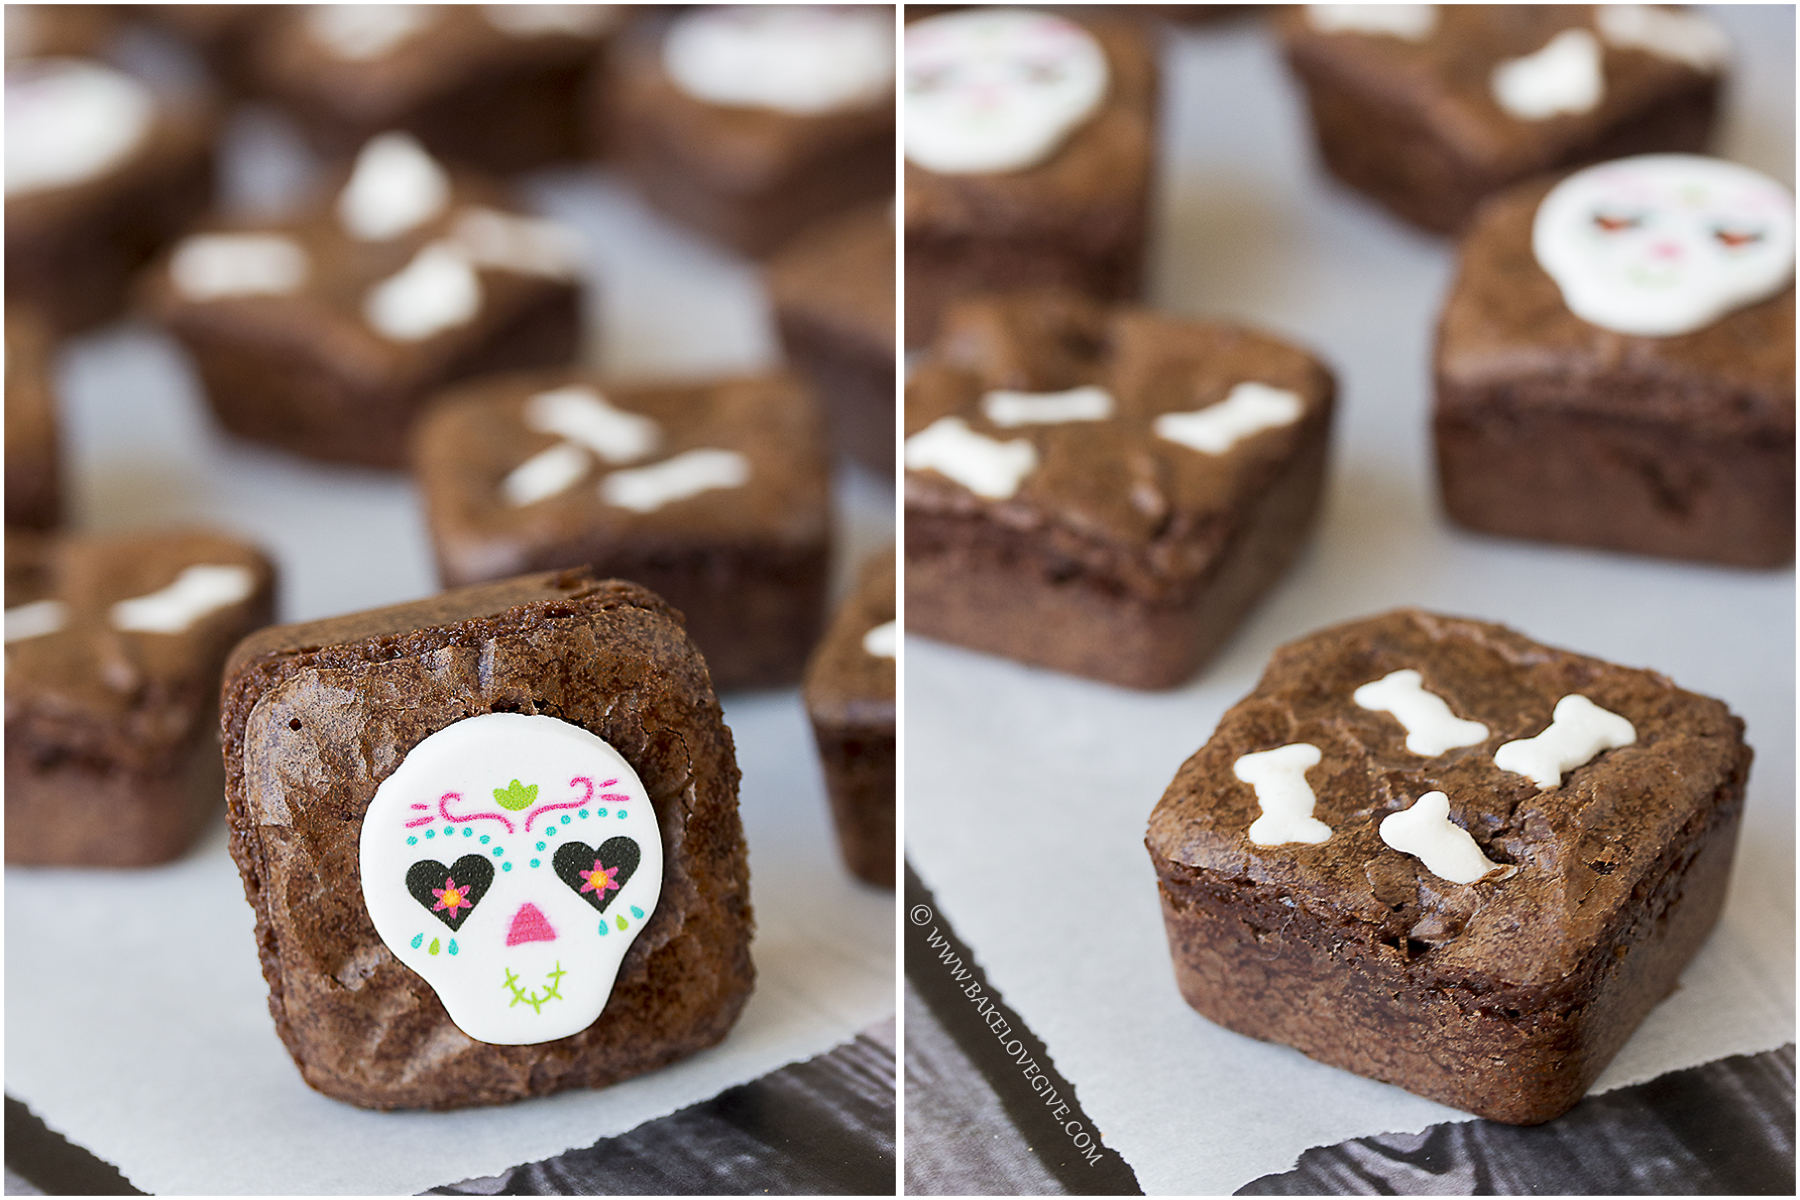 http://bakelovegive.com/wp-content/uploads/2014/10/Dia-de-los-Muertos-Brownies.jpg